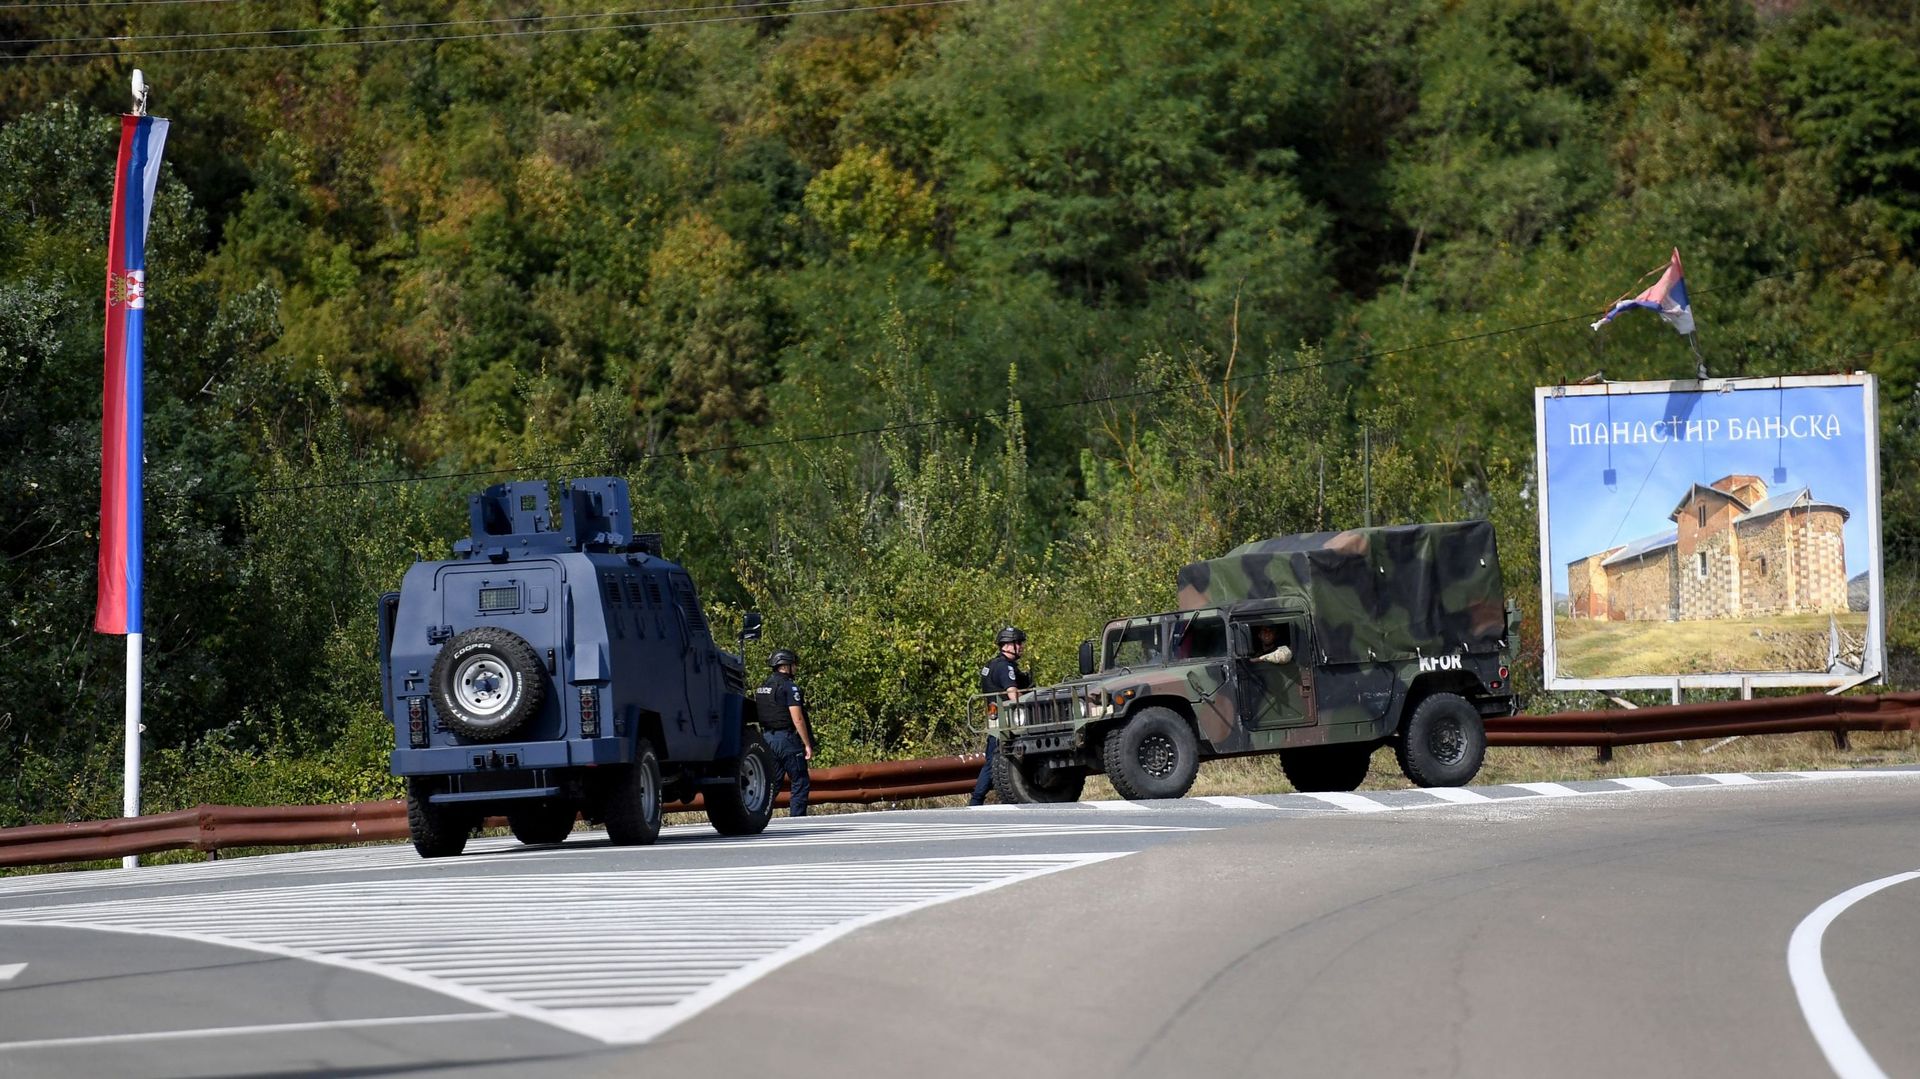 Tensioni in Kosovo: la Nato invia forze aggiuntive dopo violenti scontri